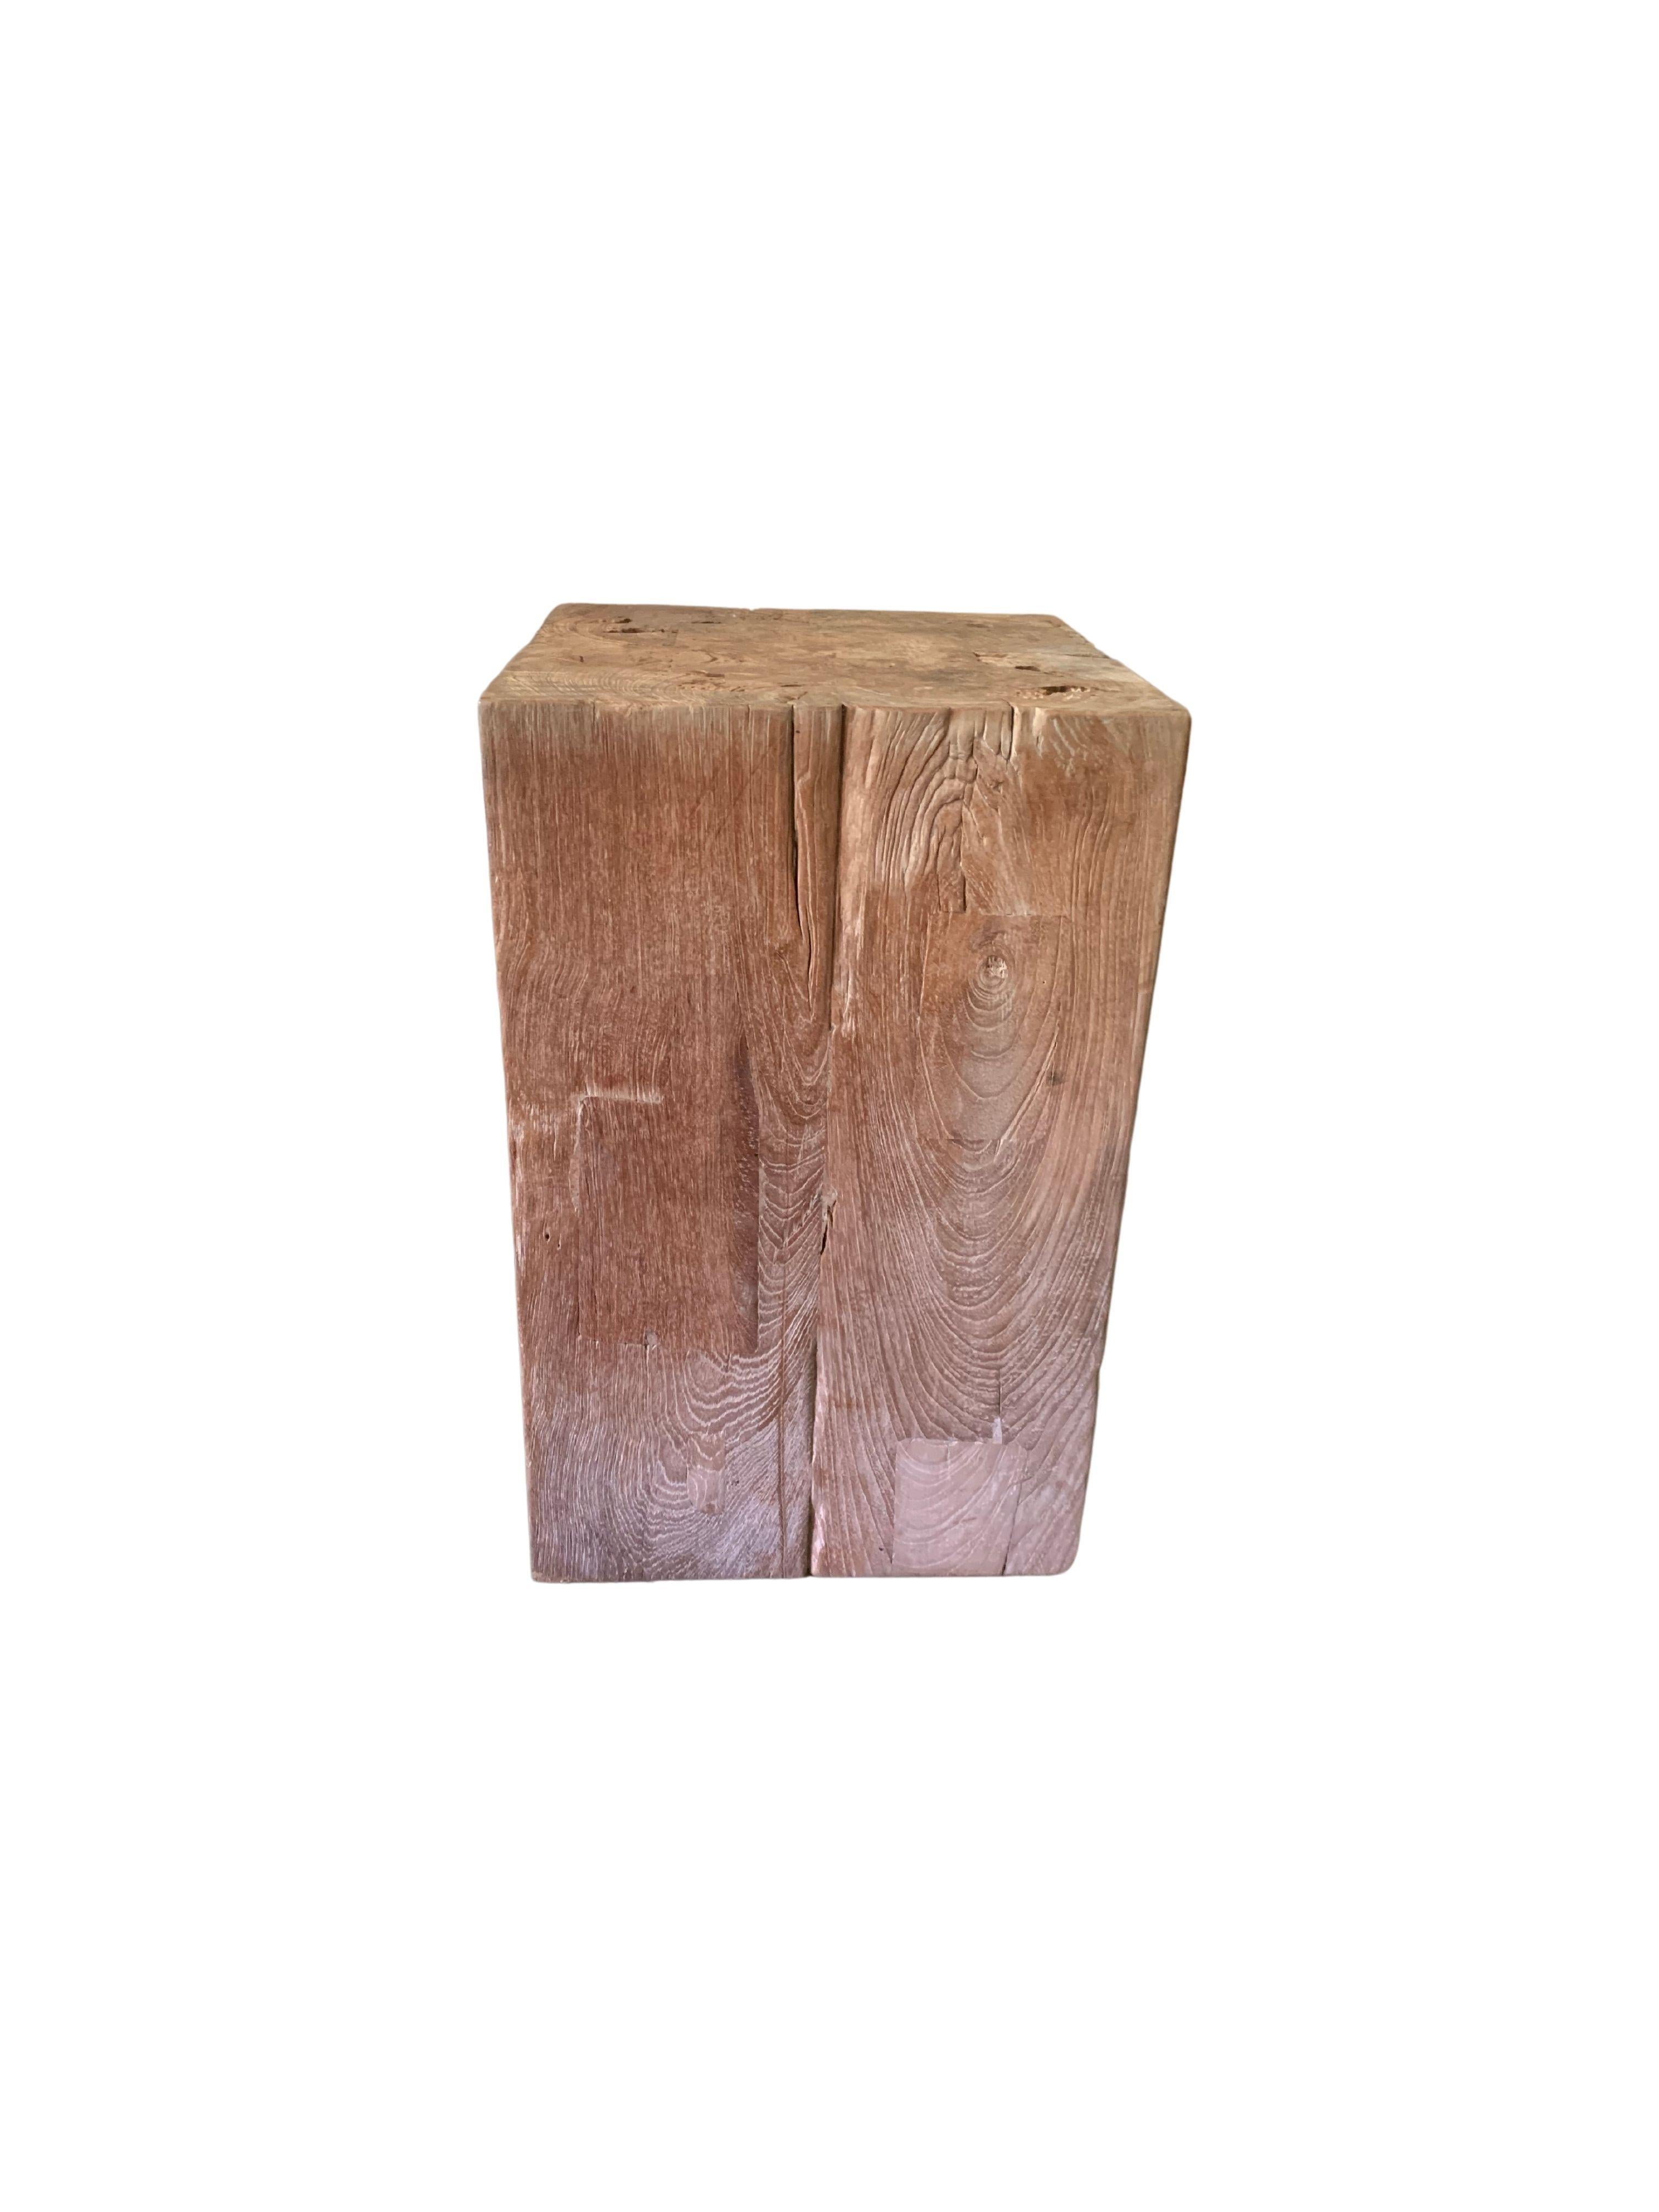 Qing Teak Wood Pedestal Crafted in Java, Indonesia